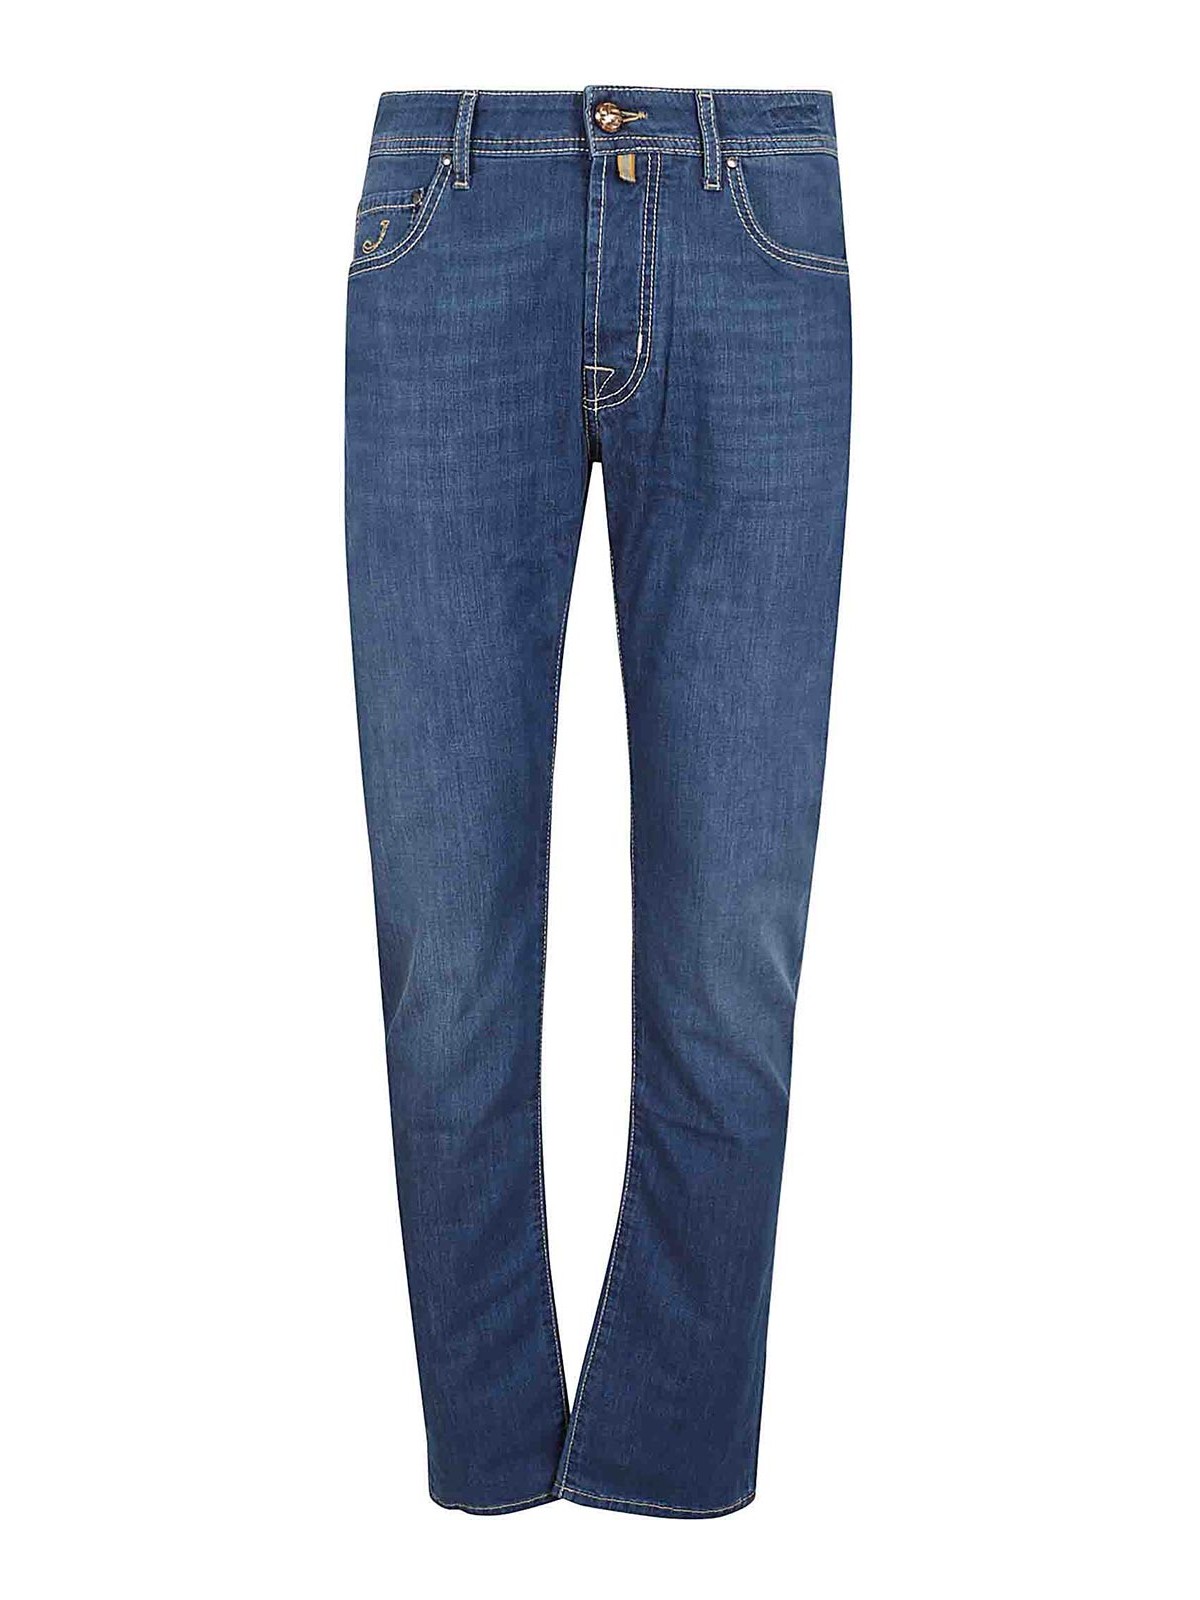 Shop Jacob Cohen Pant 5 Slim Fit Bard Jeans In Medium Wash